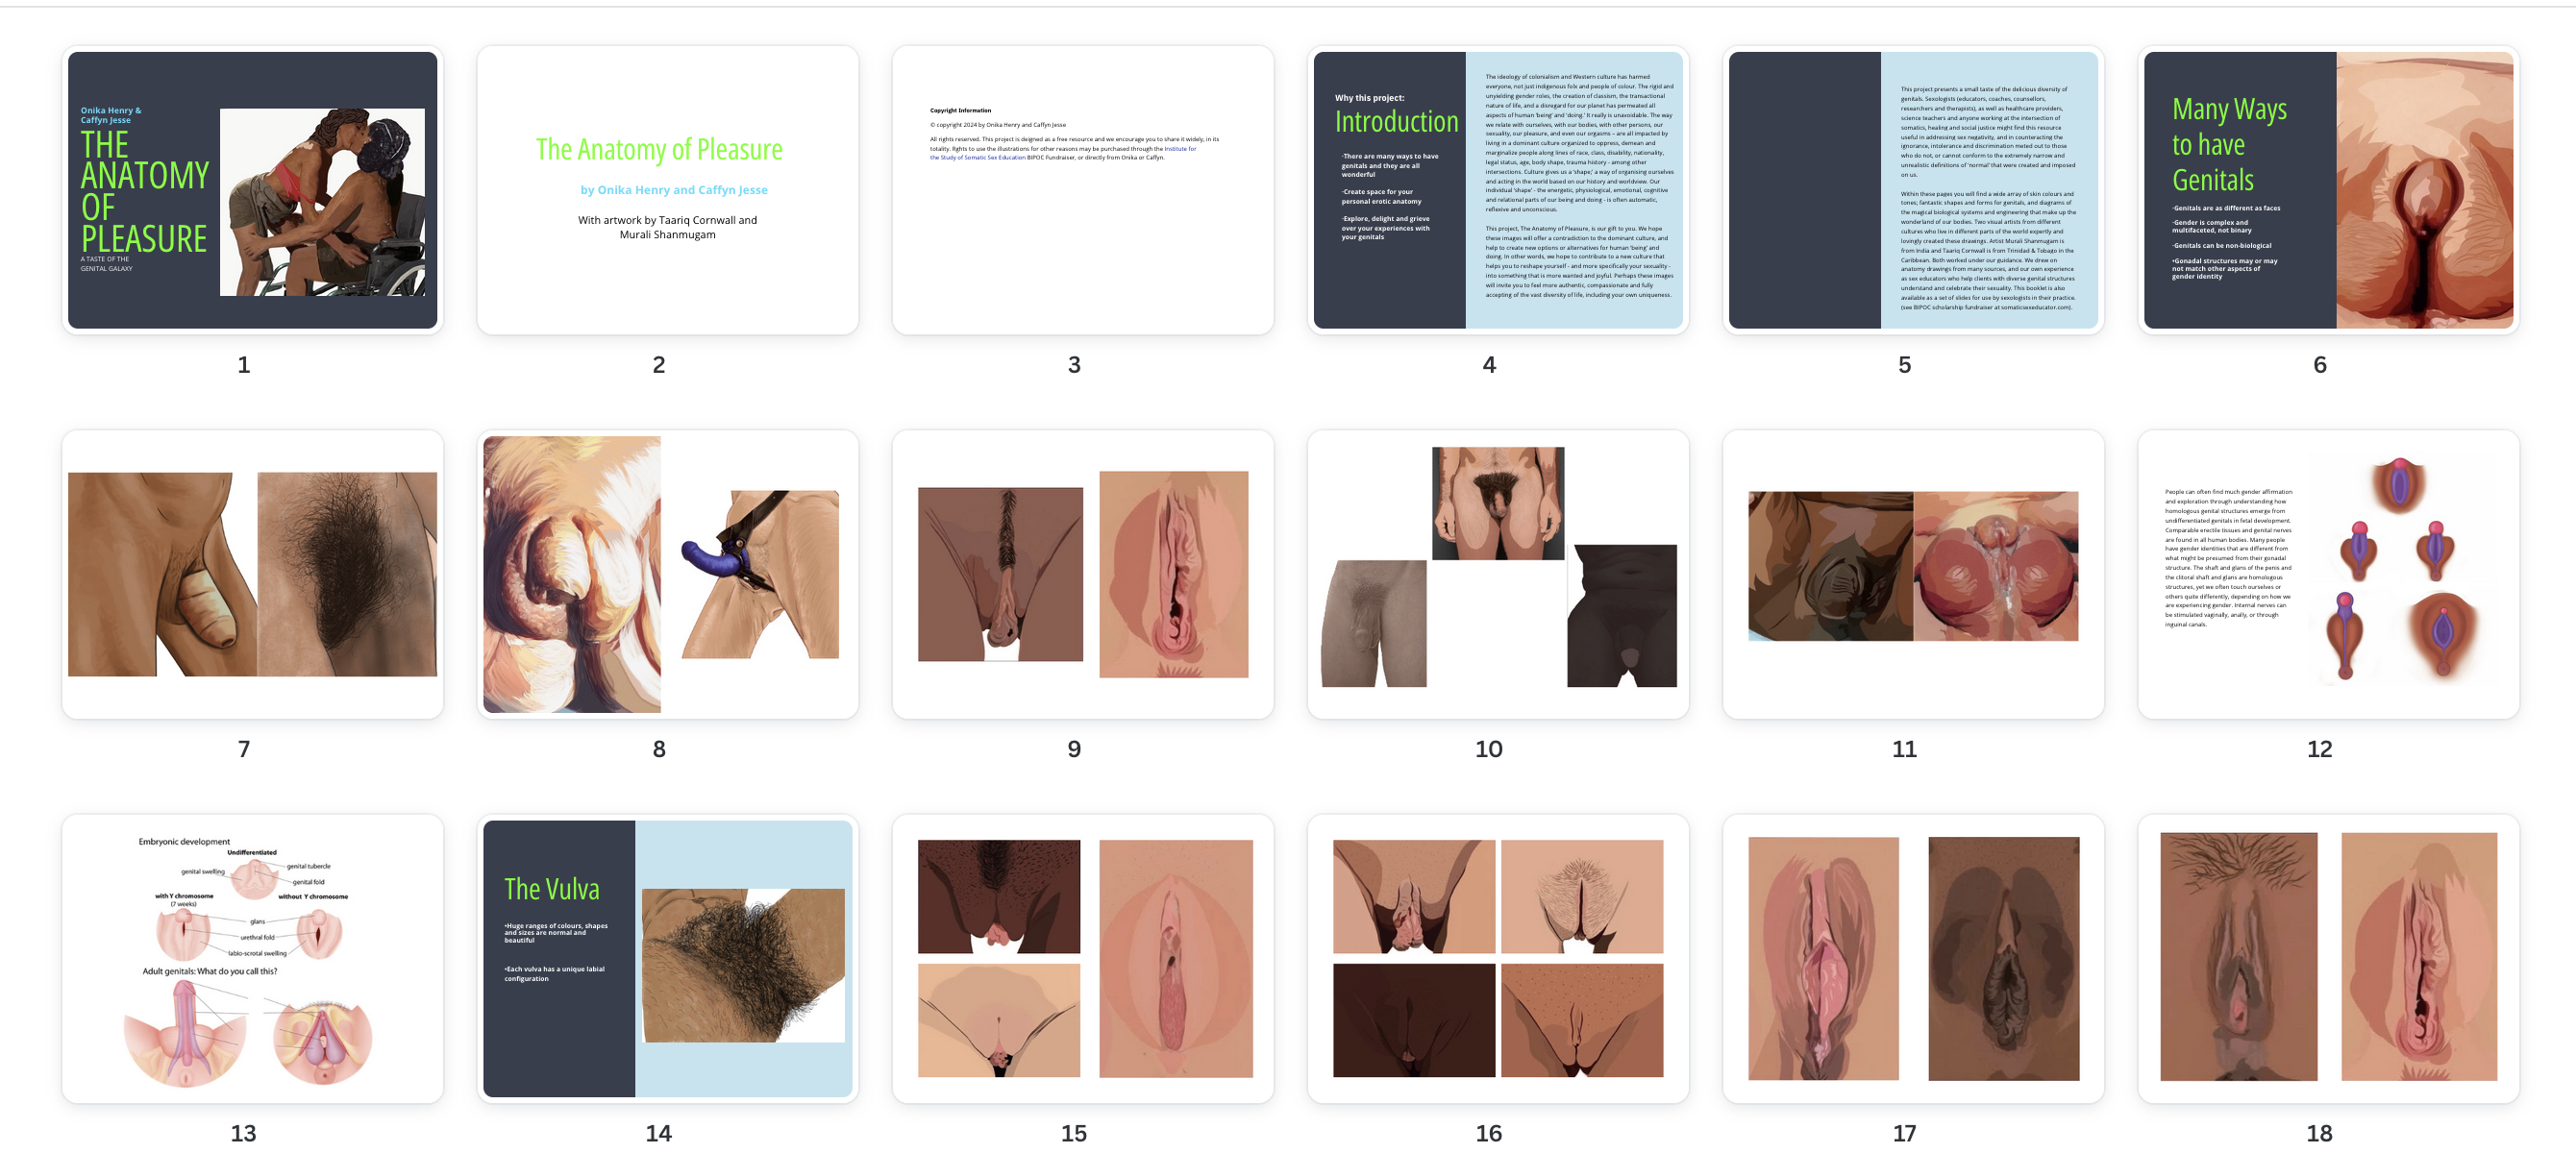 genital anatomy drawings